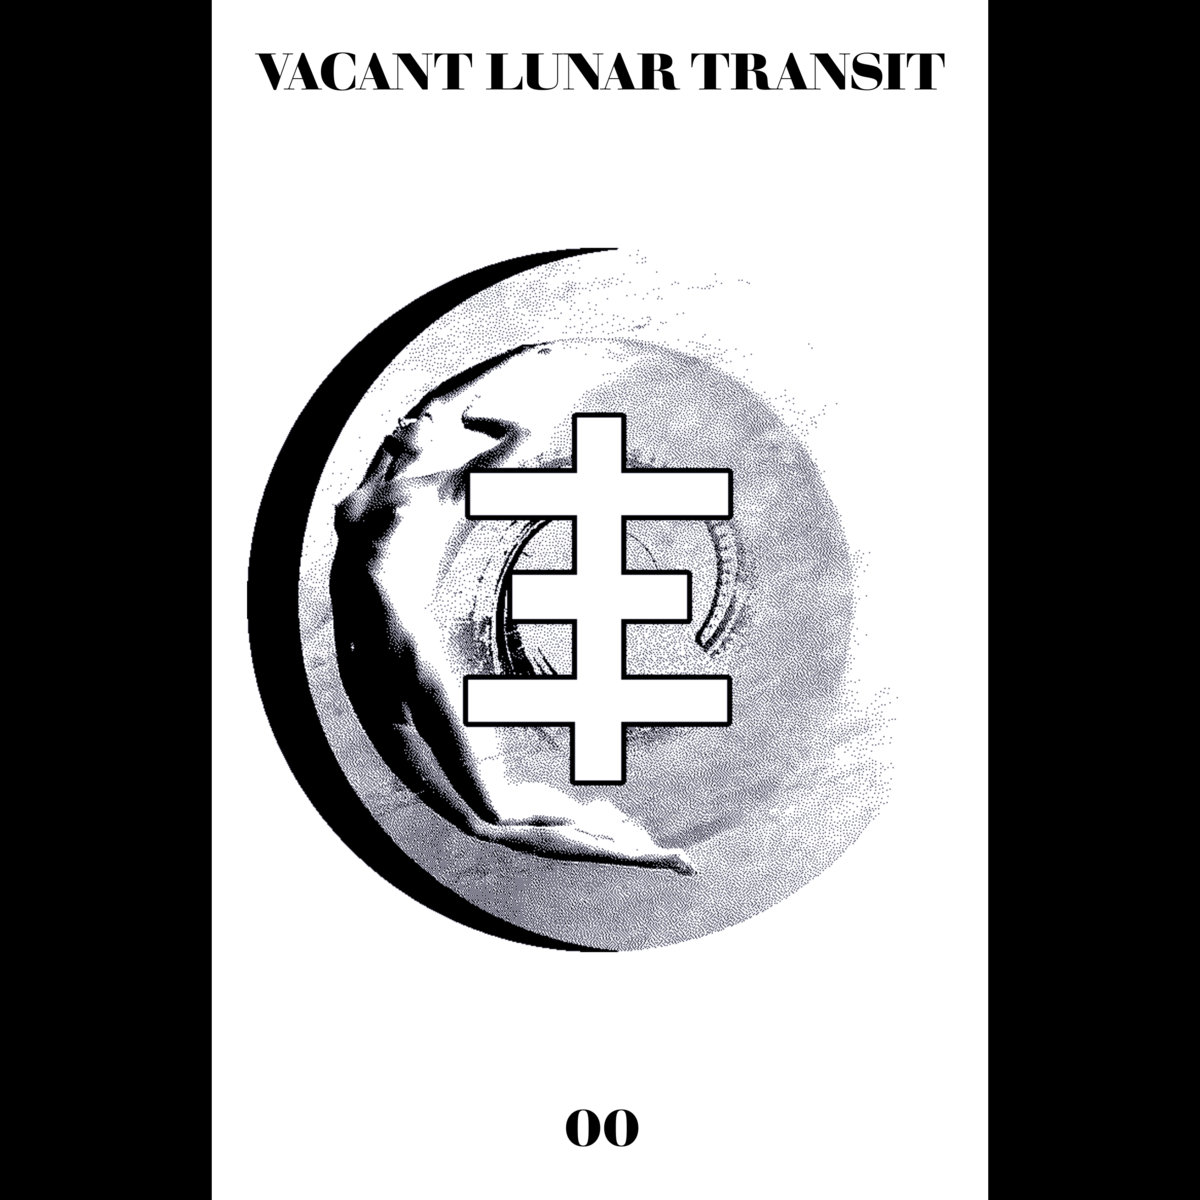 Vacant Lunar Transit - Vacant Lunar Transit Zine 00